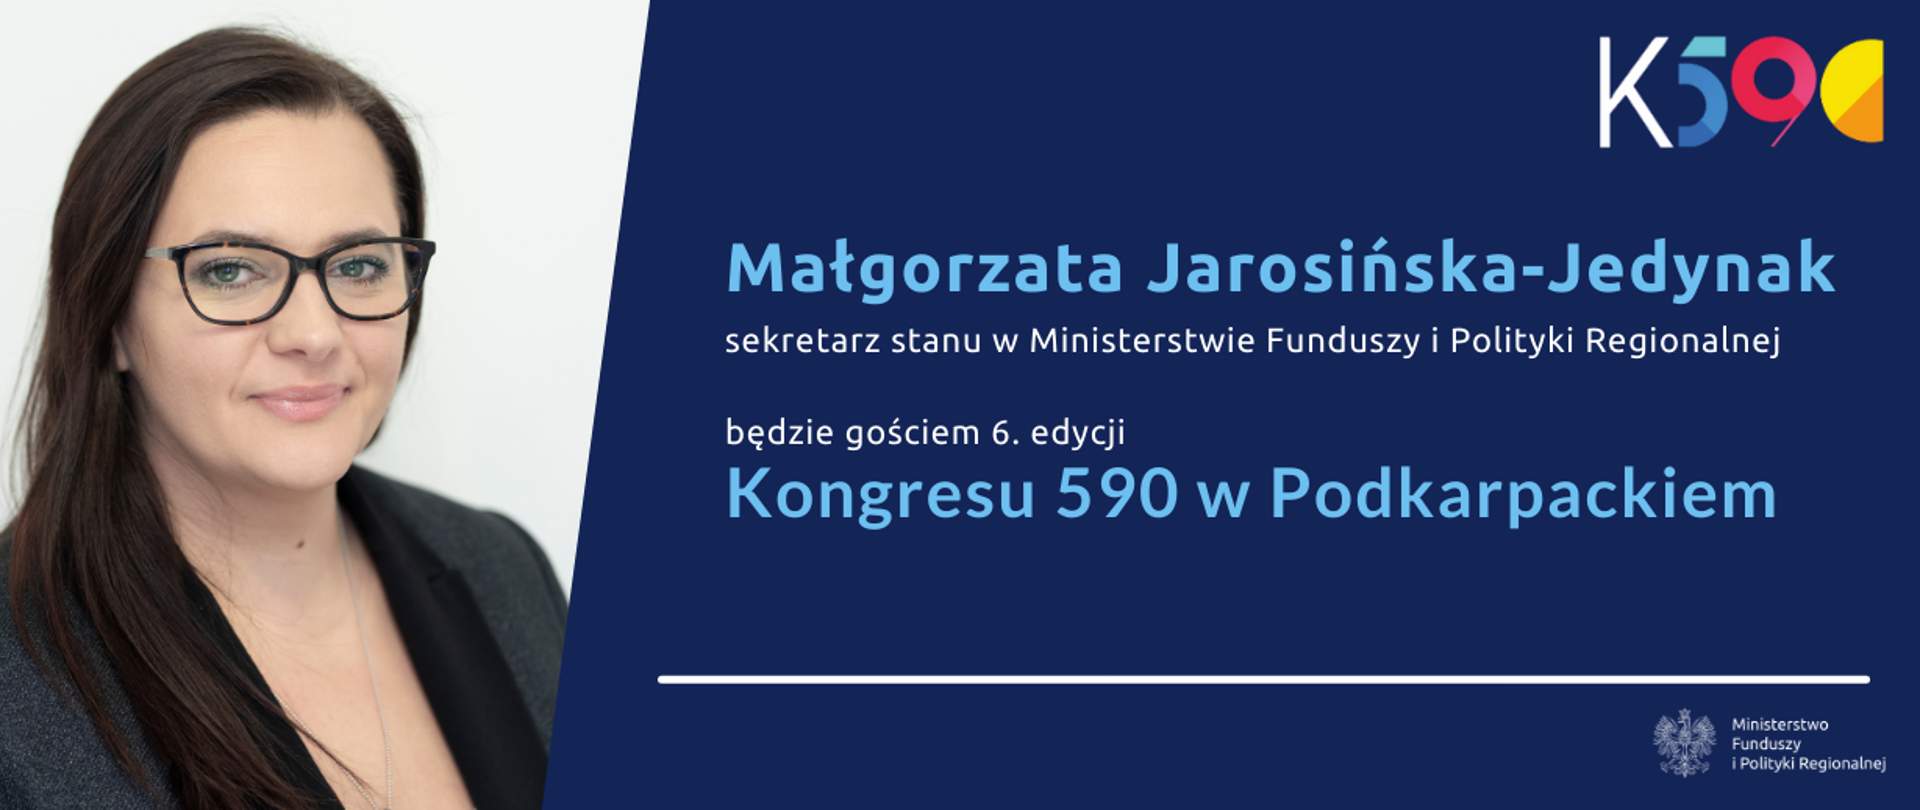 napis na grafice ze zdjęciem wiceminister Małgorzaty Jarosińskiej-Jedynak: gościem 6 edycji Kongresu 590 w Podkarpackiem będzie Małgorzata Jarosińska-Jedynak